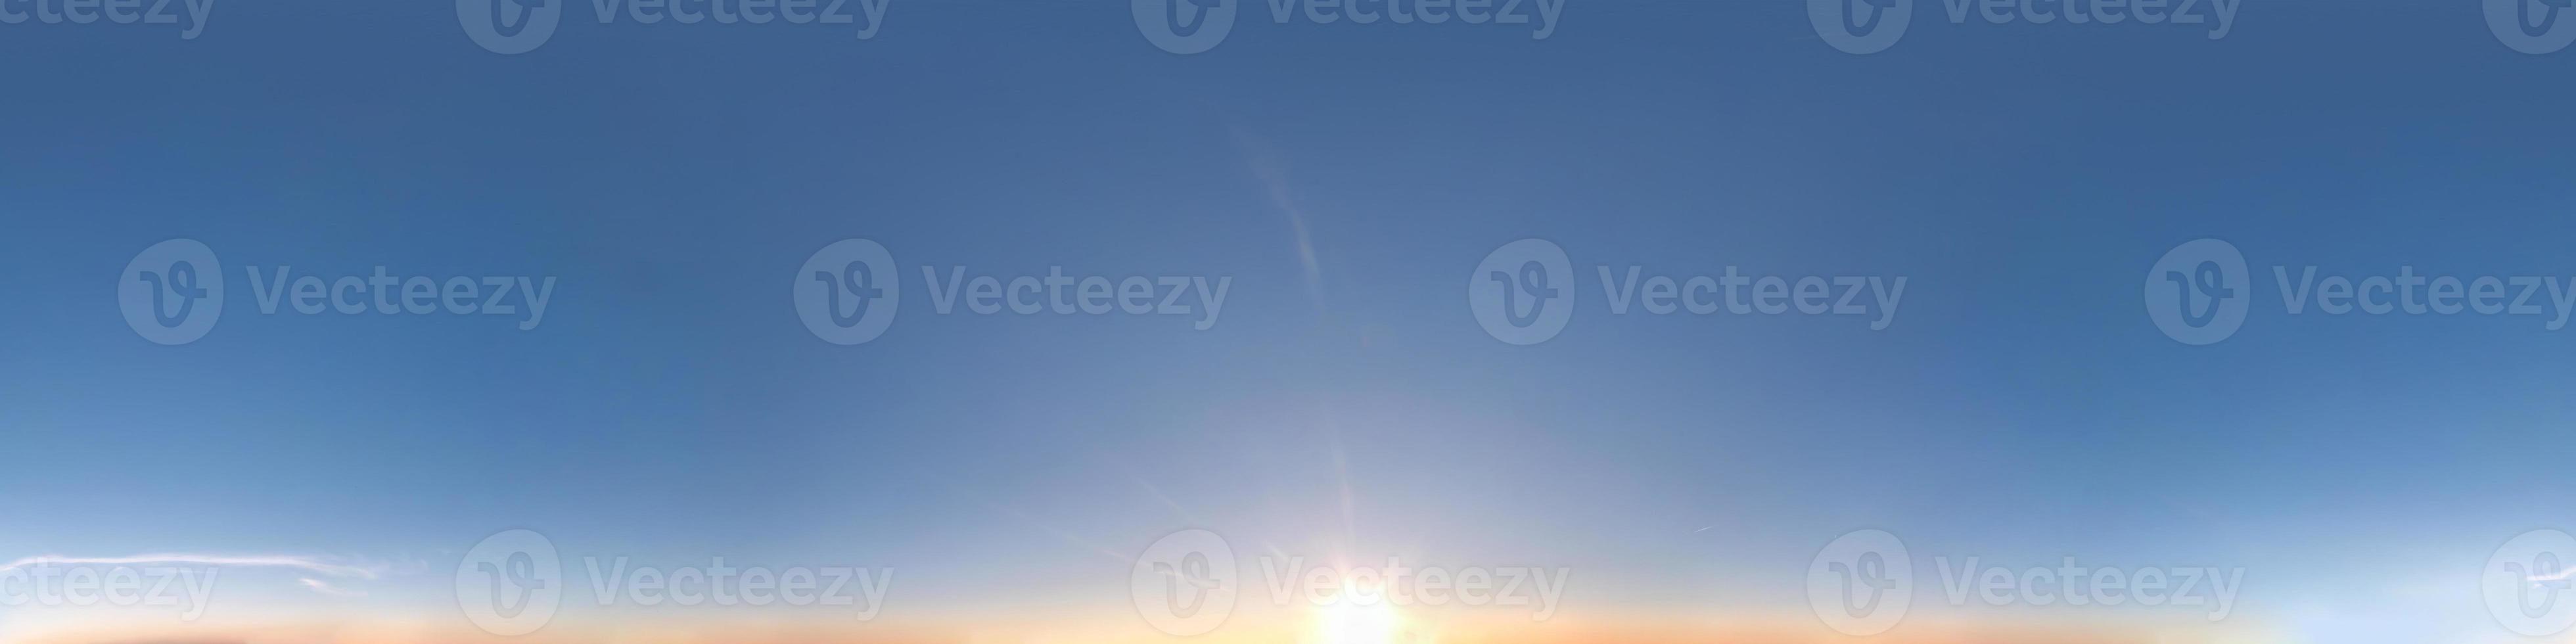 heldere blauwe lucht met eeuwig brandende zon. naadloos hdri-panorama 360 graden hoekweergave met zenit voor gebruik in 3D-graphics of game-ontwikkeling als sky dome of edit drone shot foto